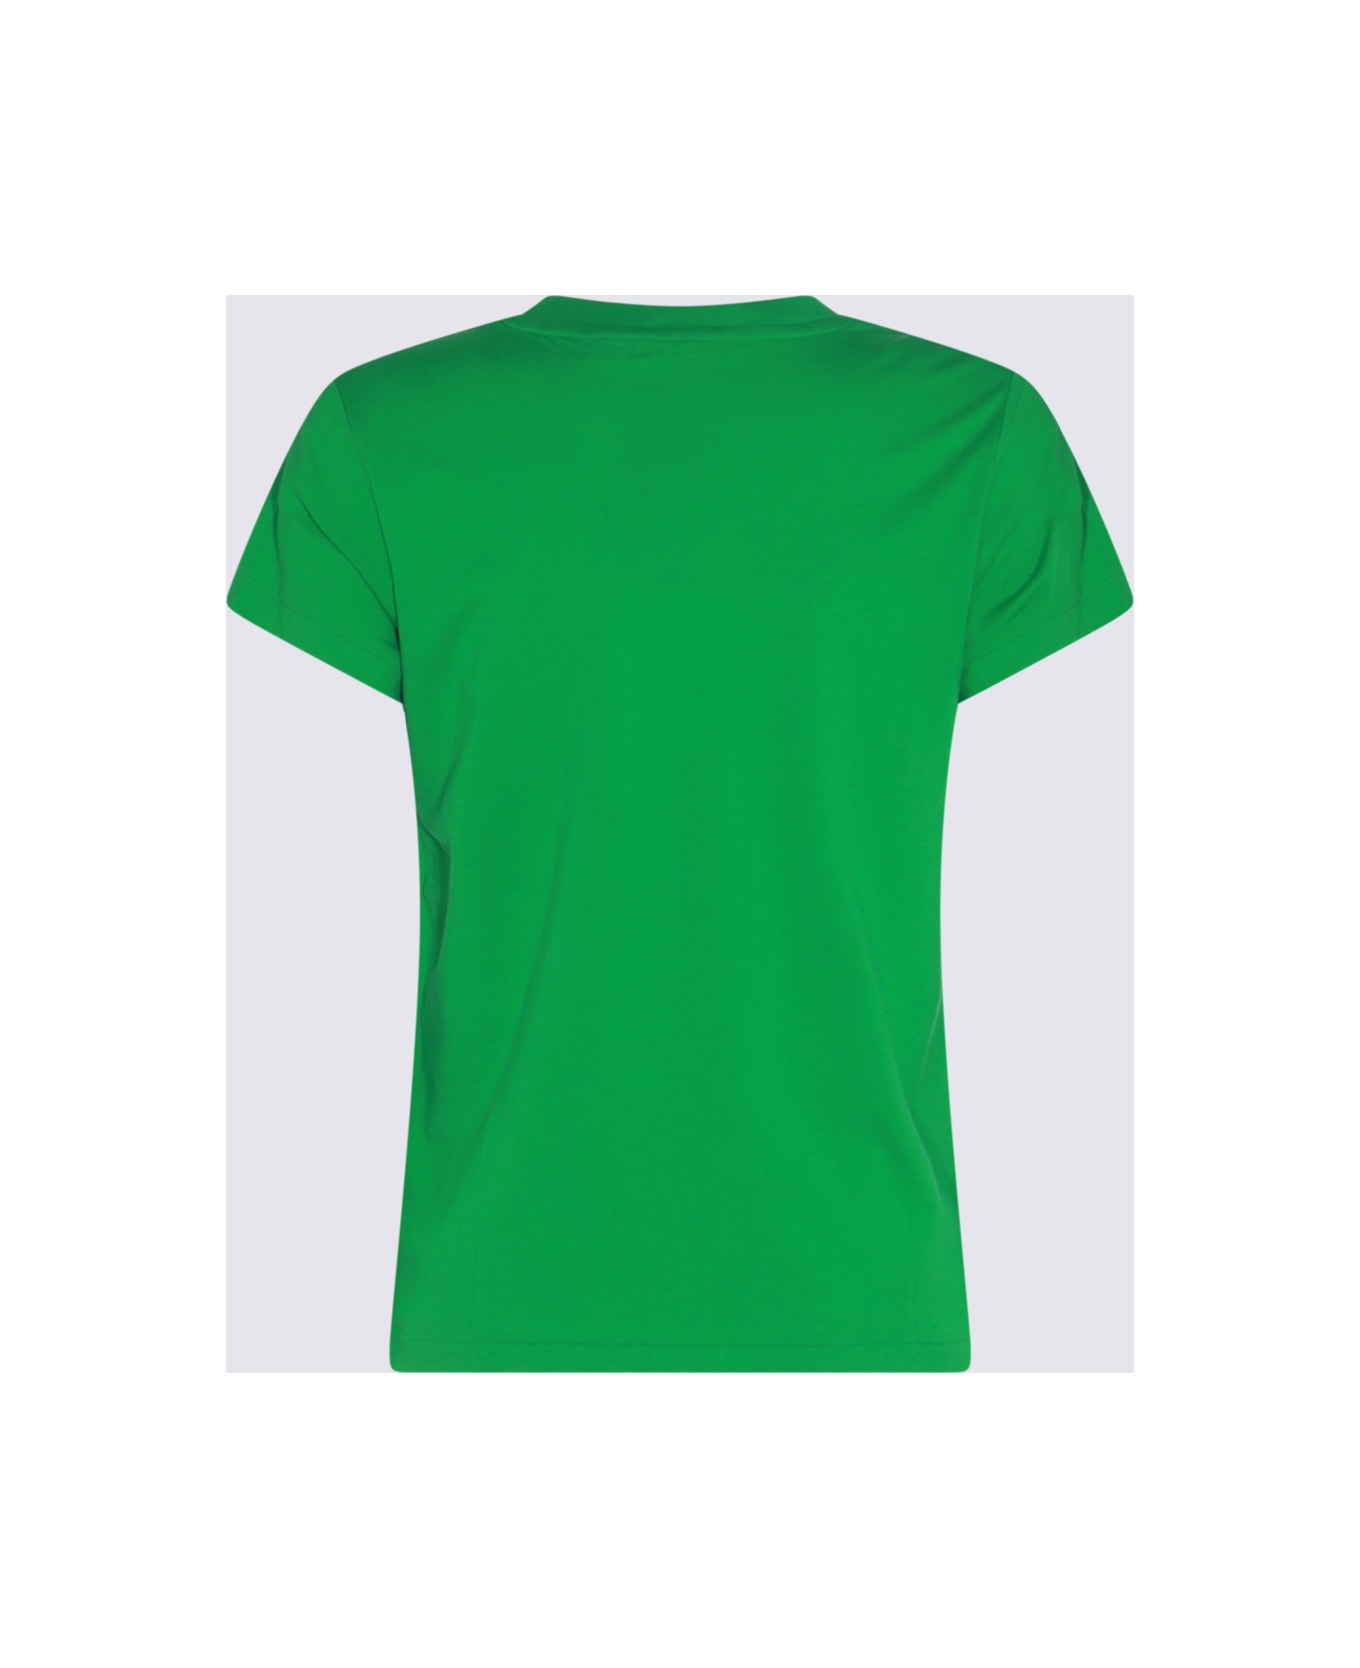 Polo Ralph Lauren Green And Blue Cotton T-shirt - Green